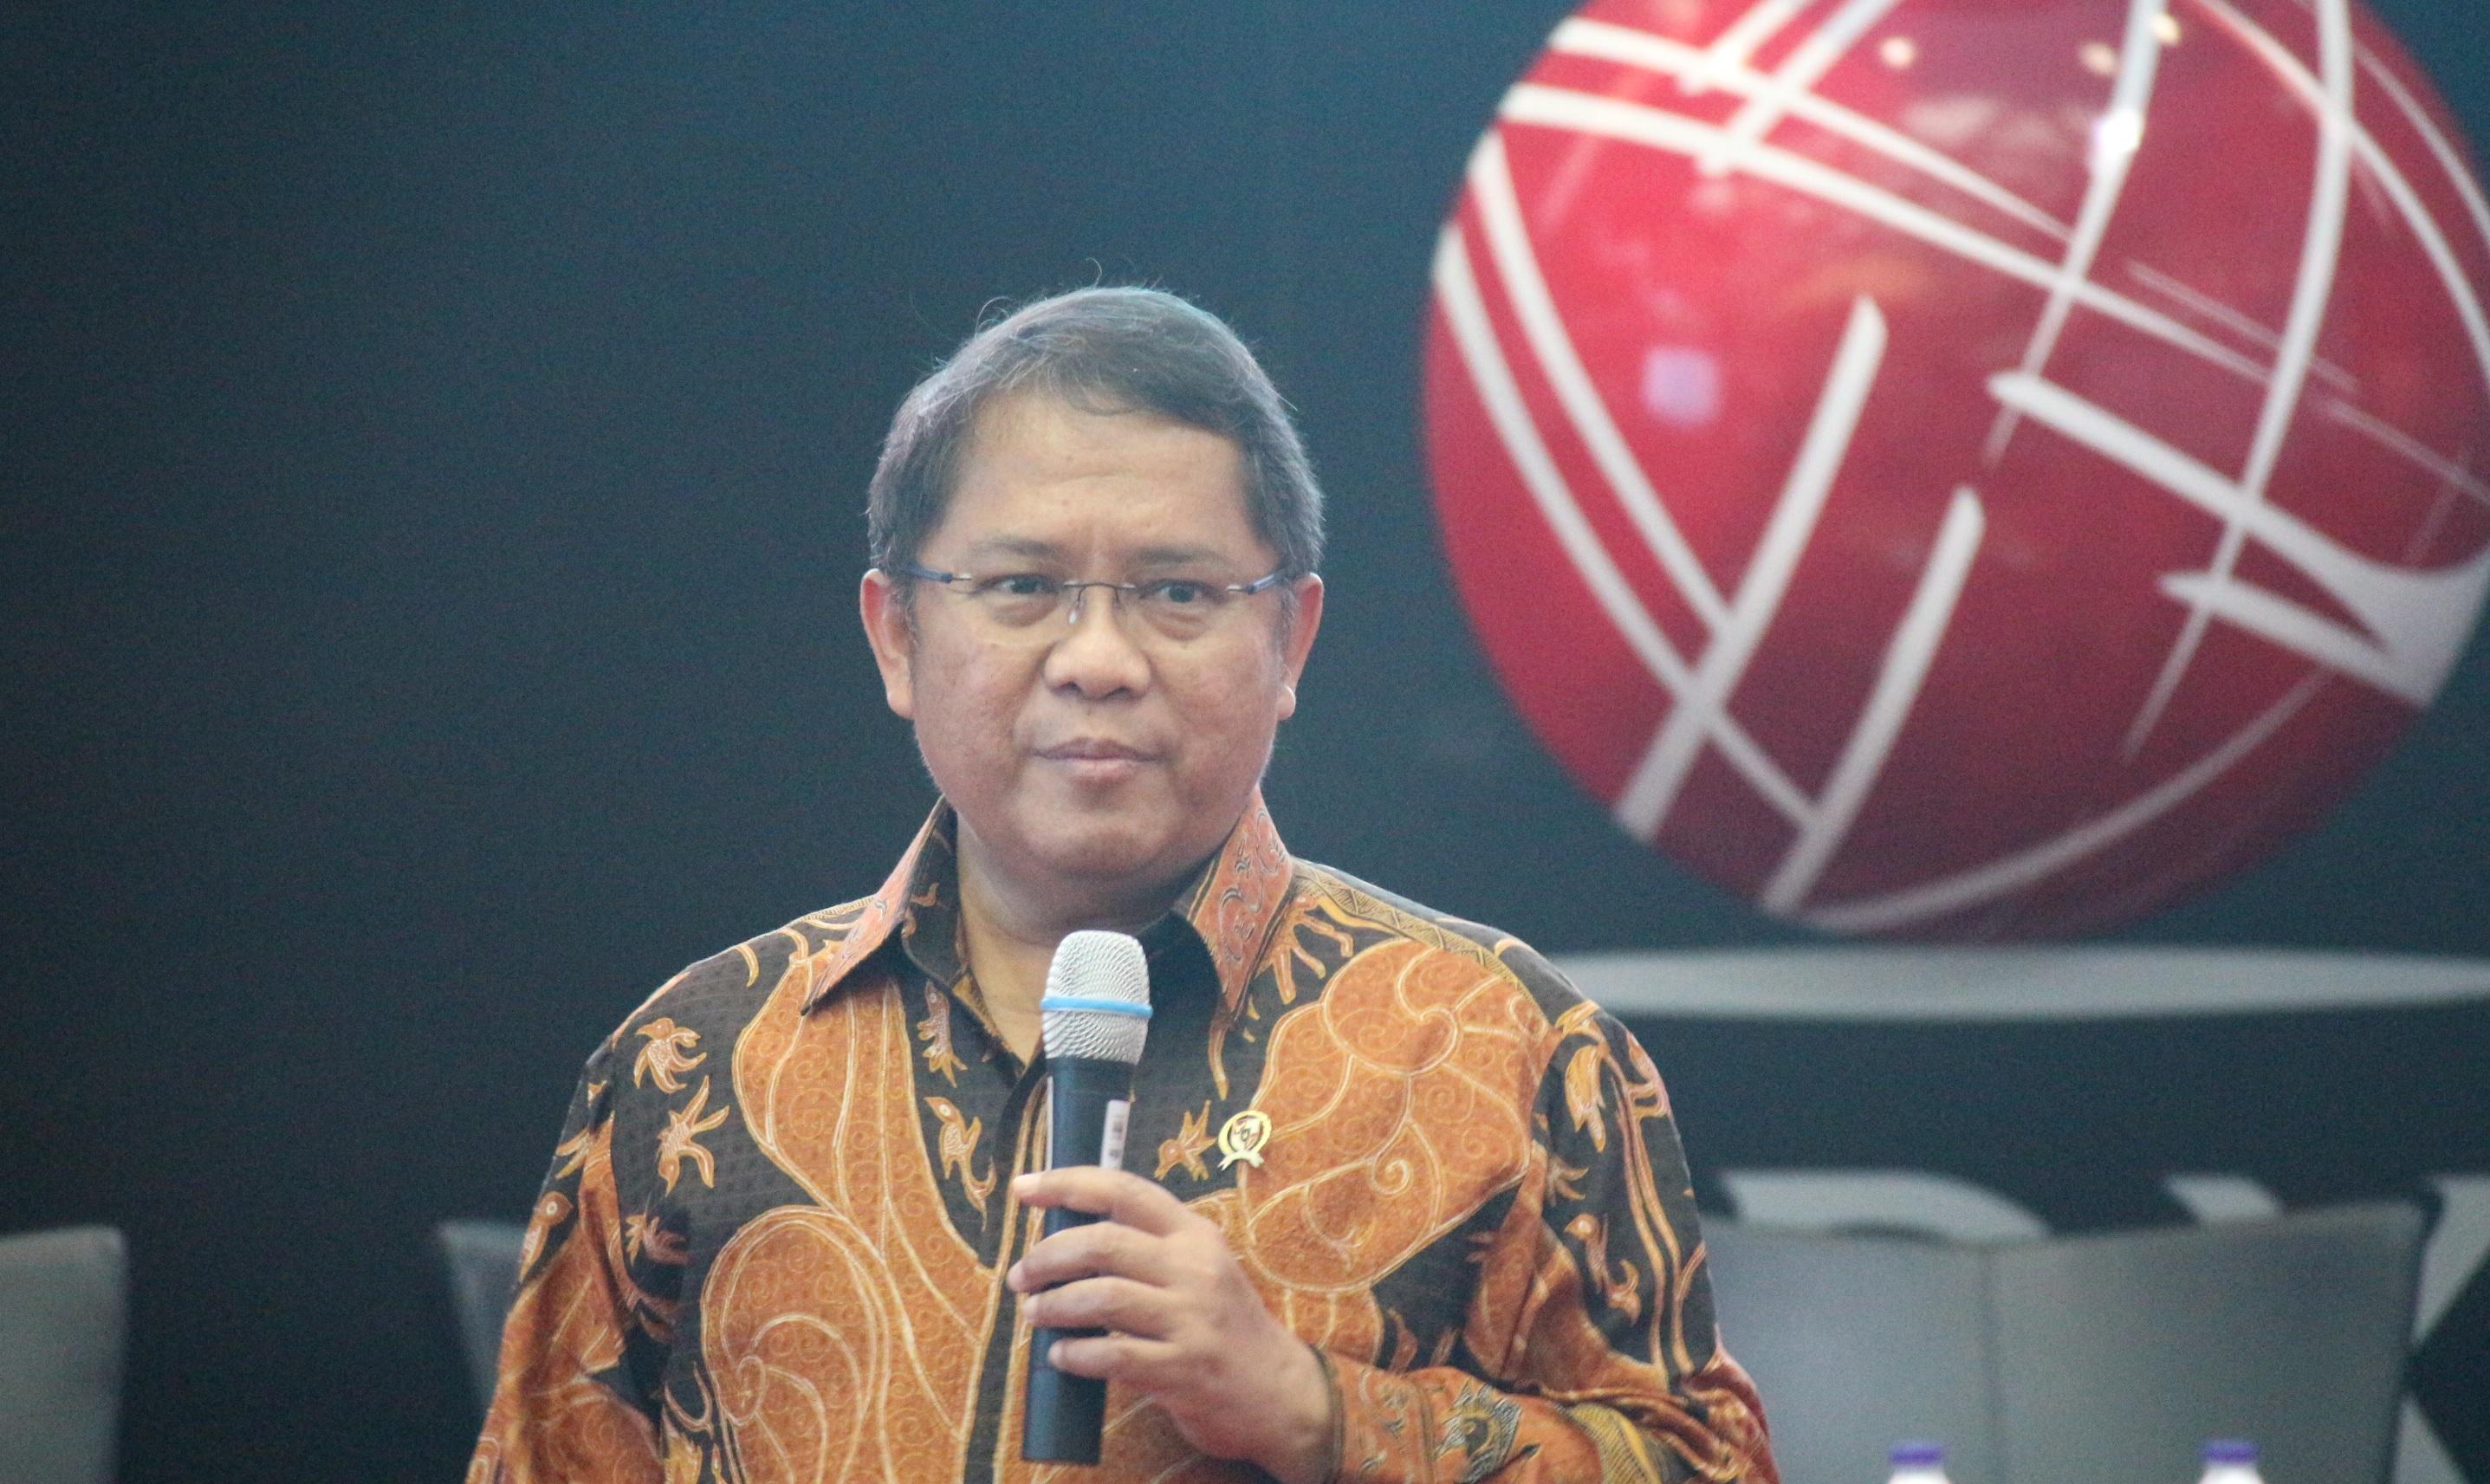 Menkominfo Rudiantara : Bangun Ekosistem untuk IPO Unicorn Indonesia